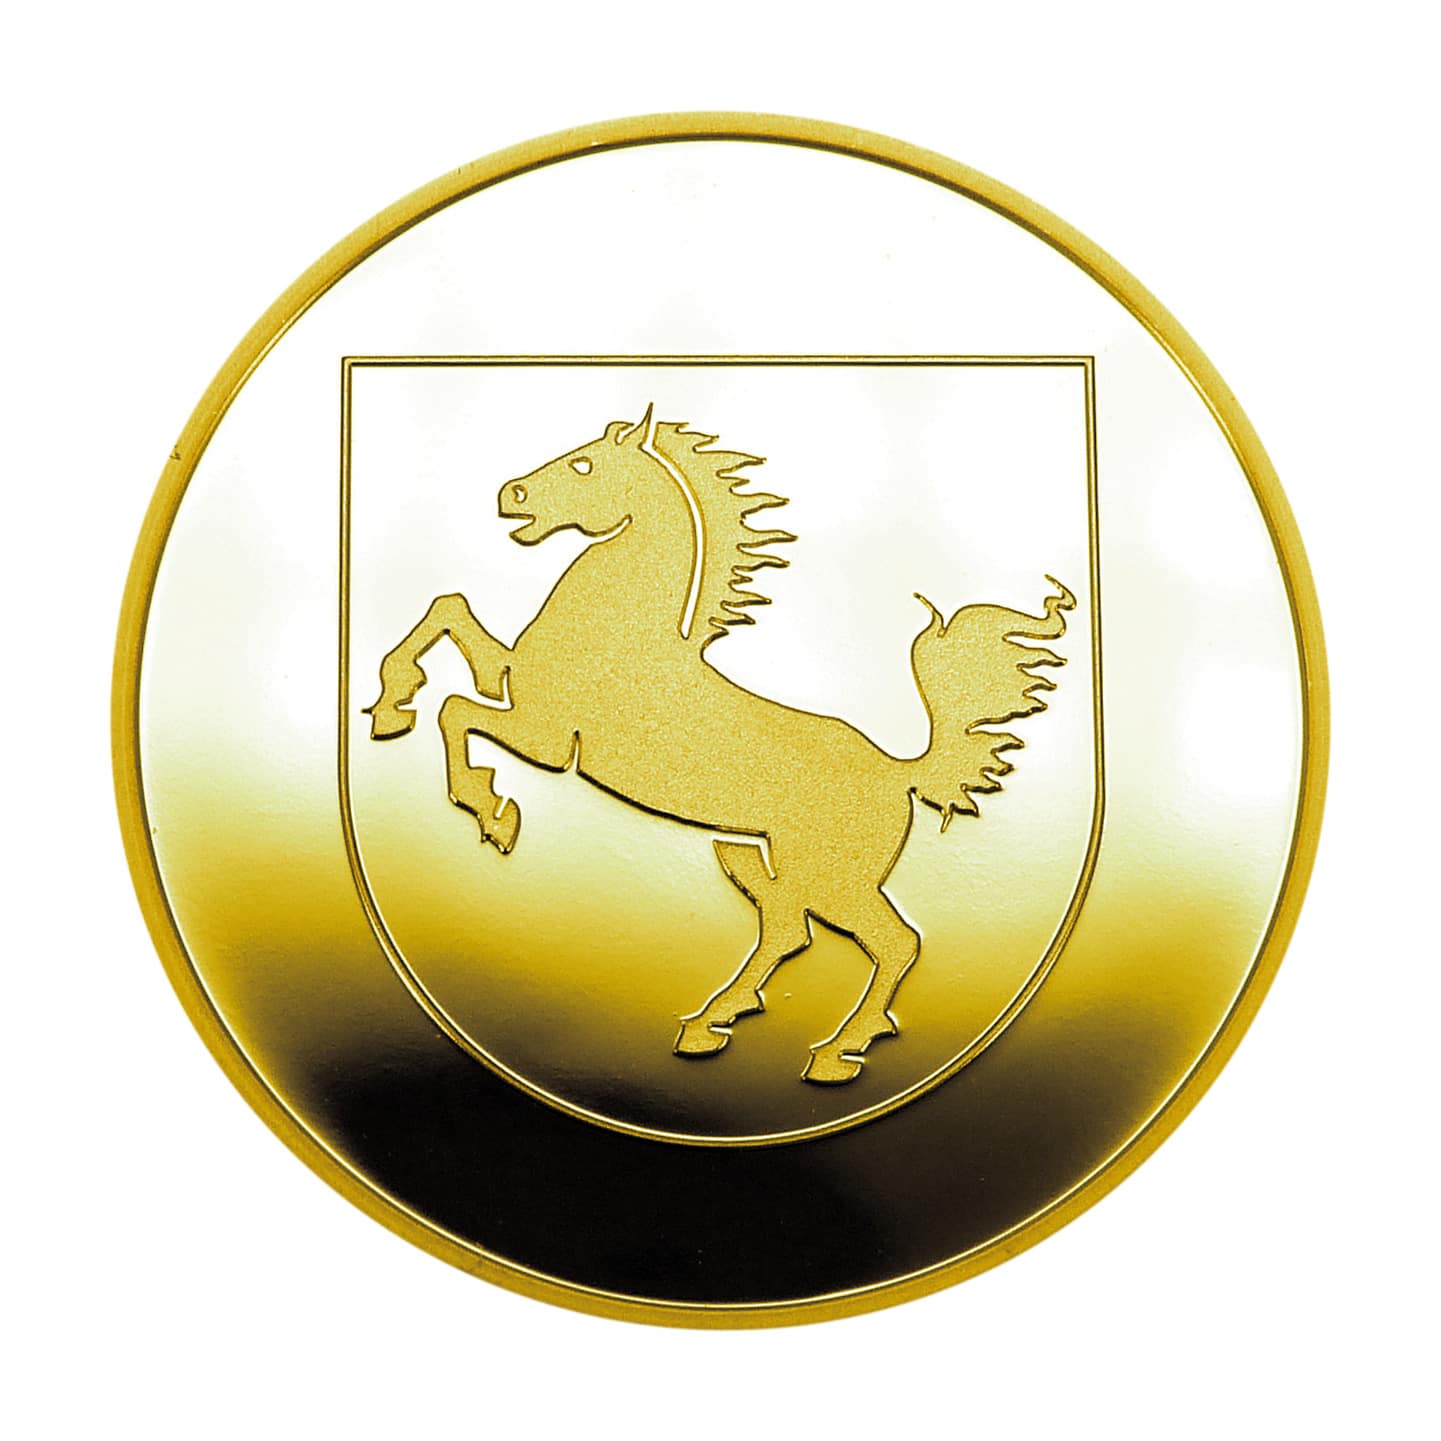 UEFA EURO 2024 Stuttgart - gold